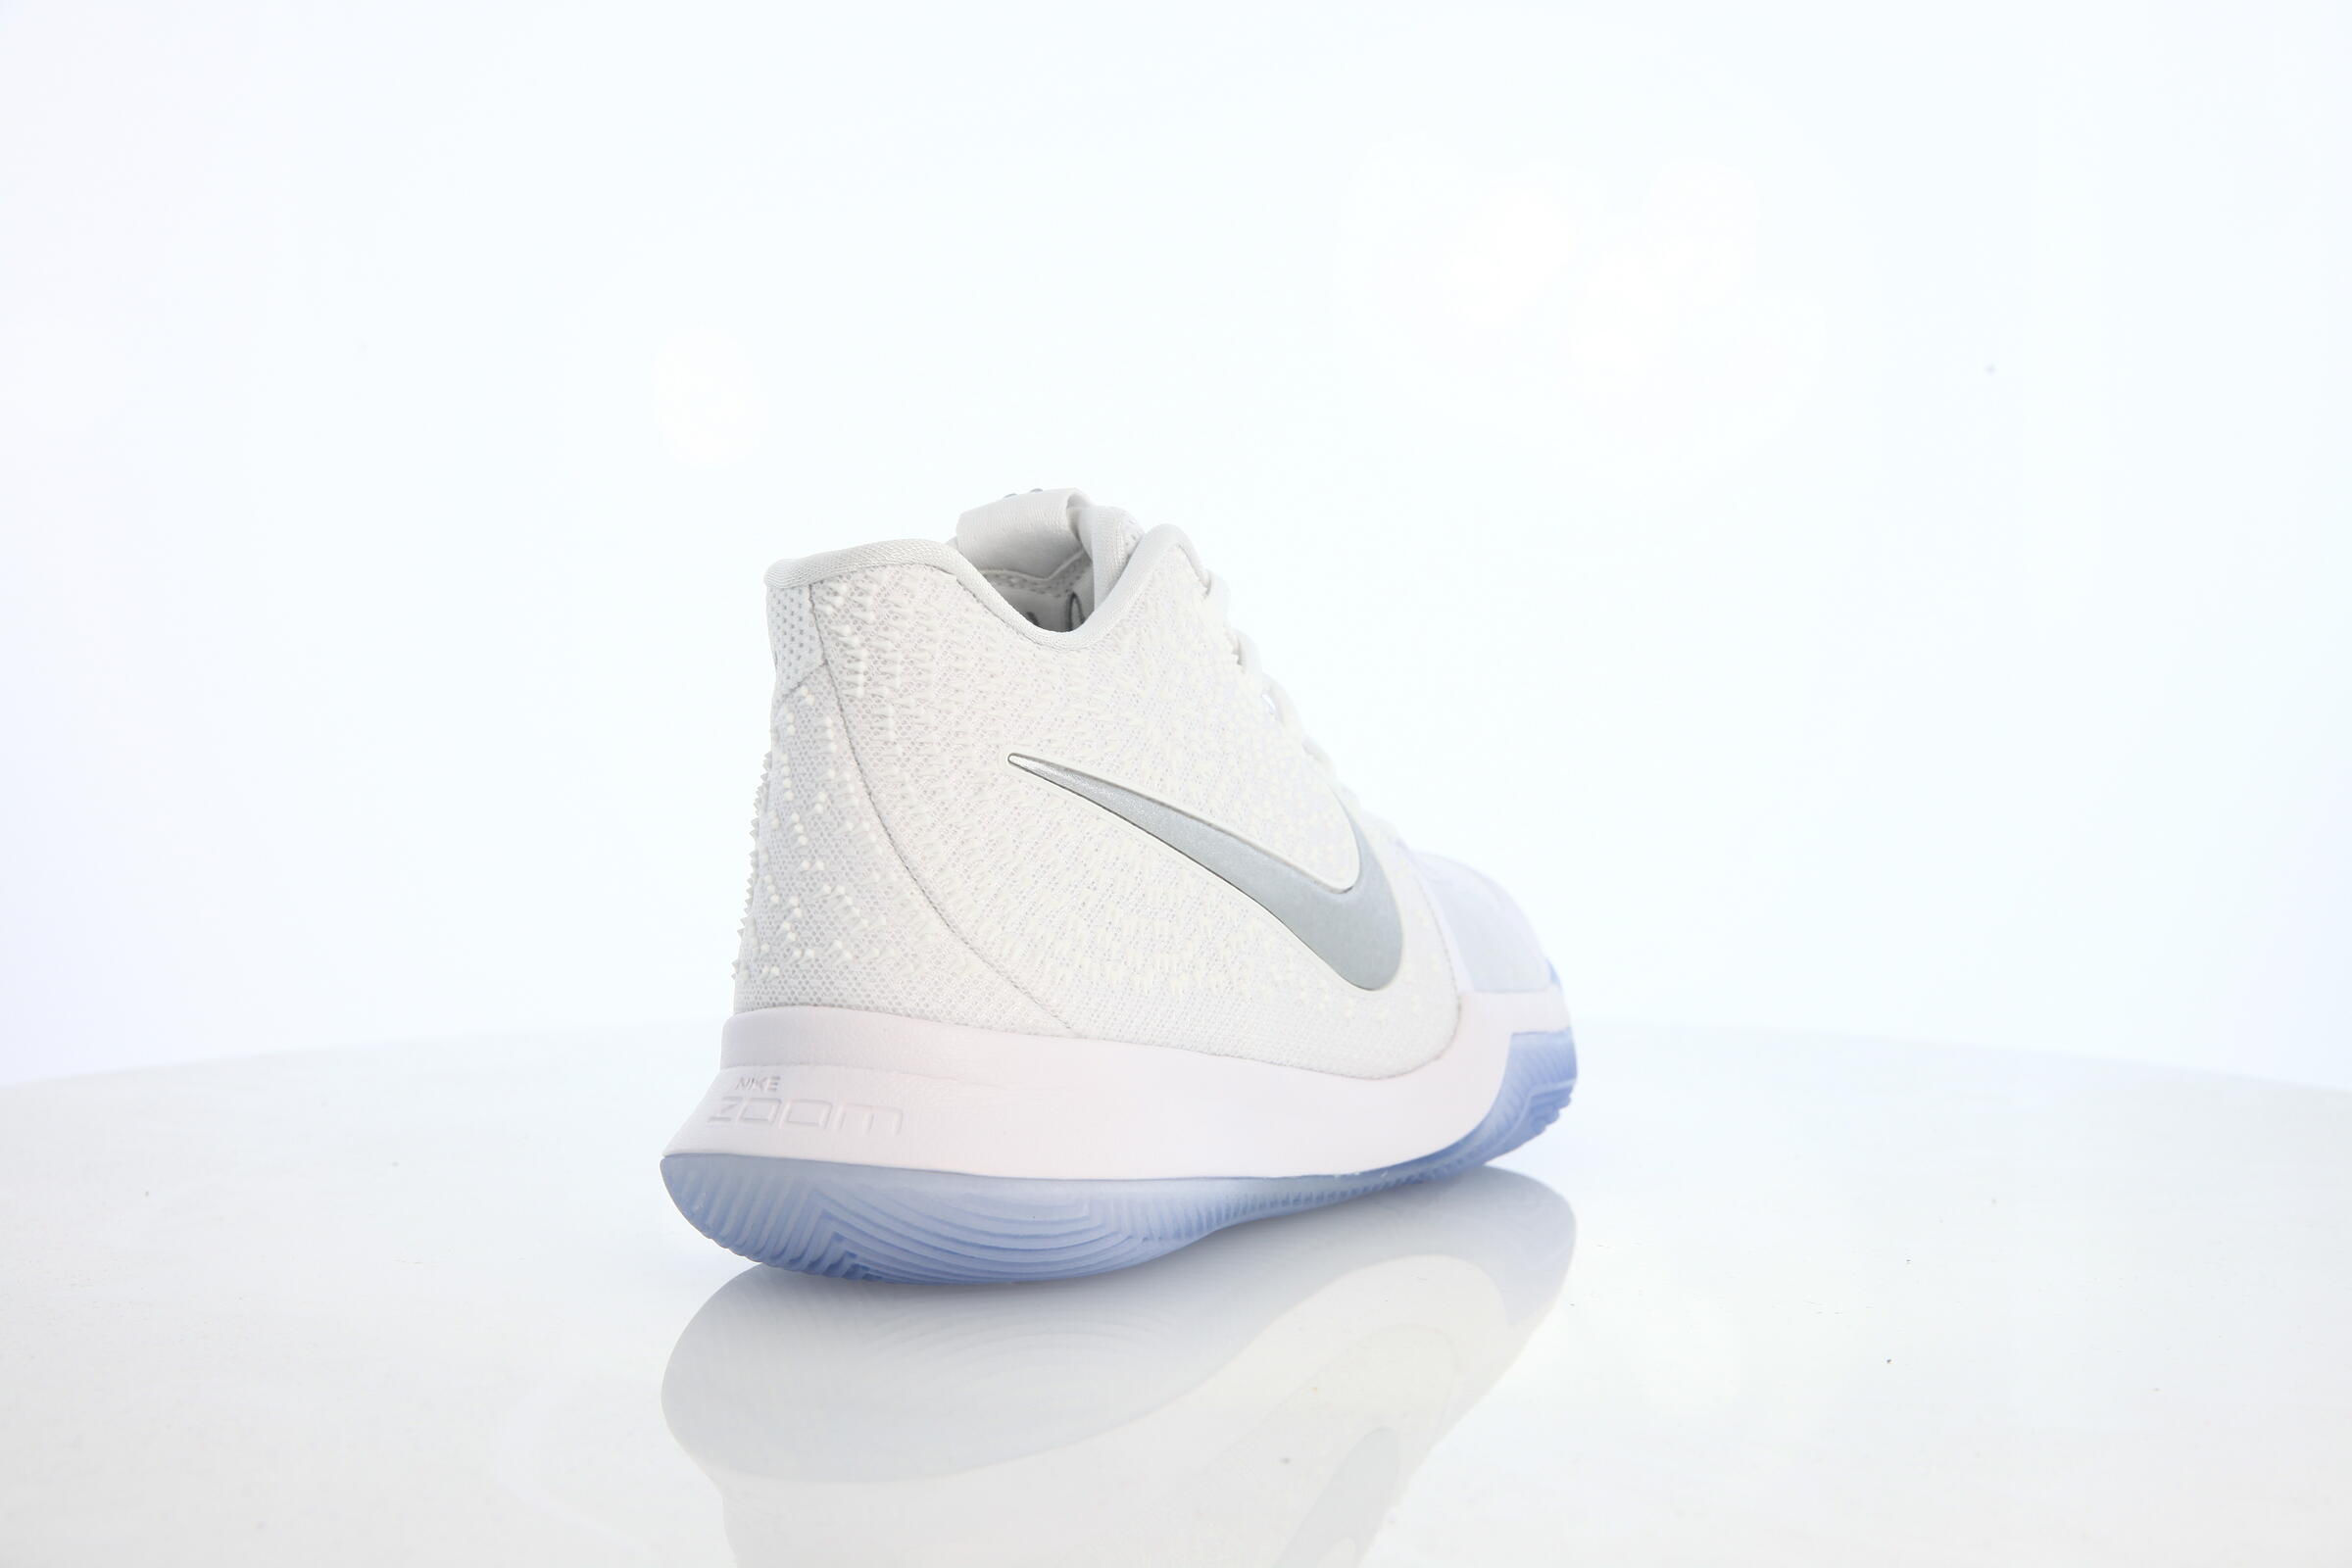 Nike Kyrie 3 "White"